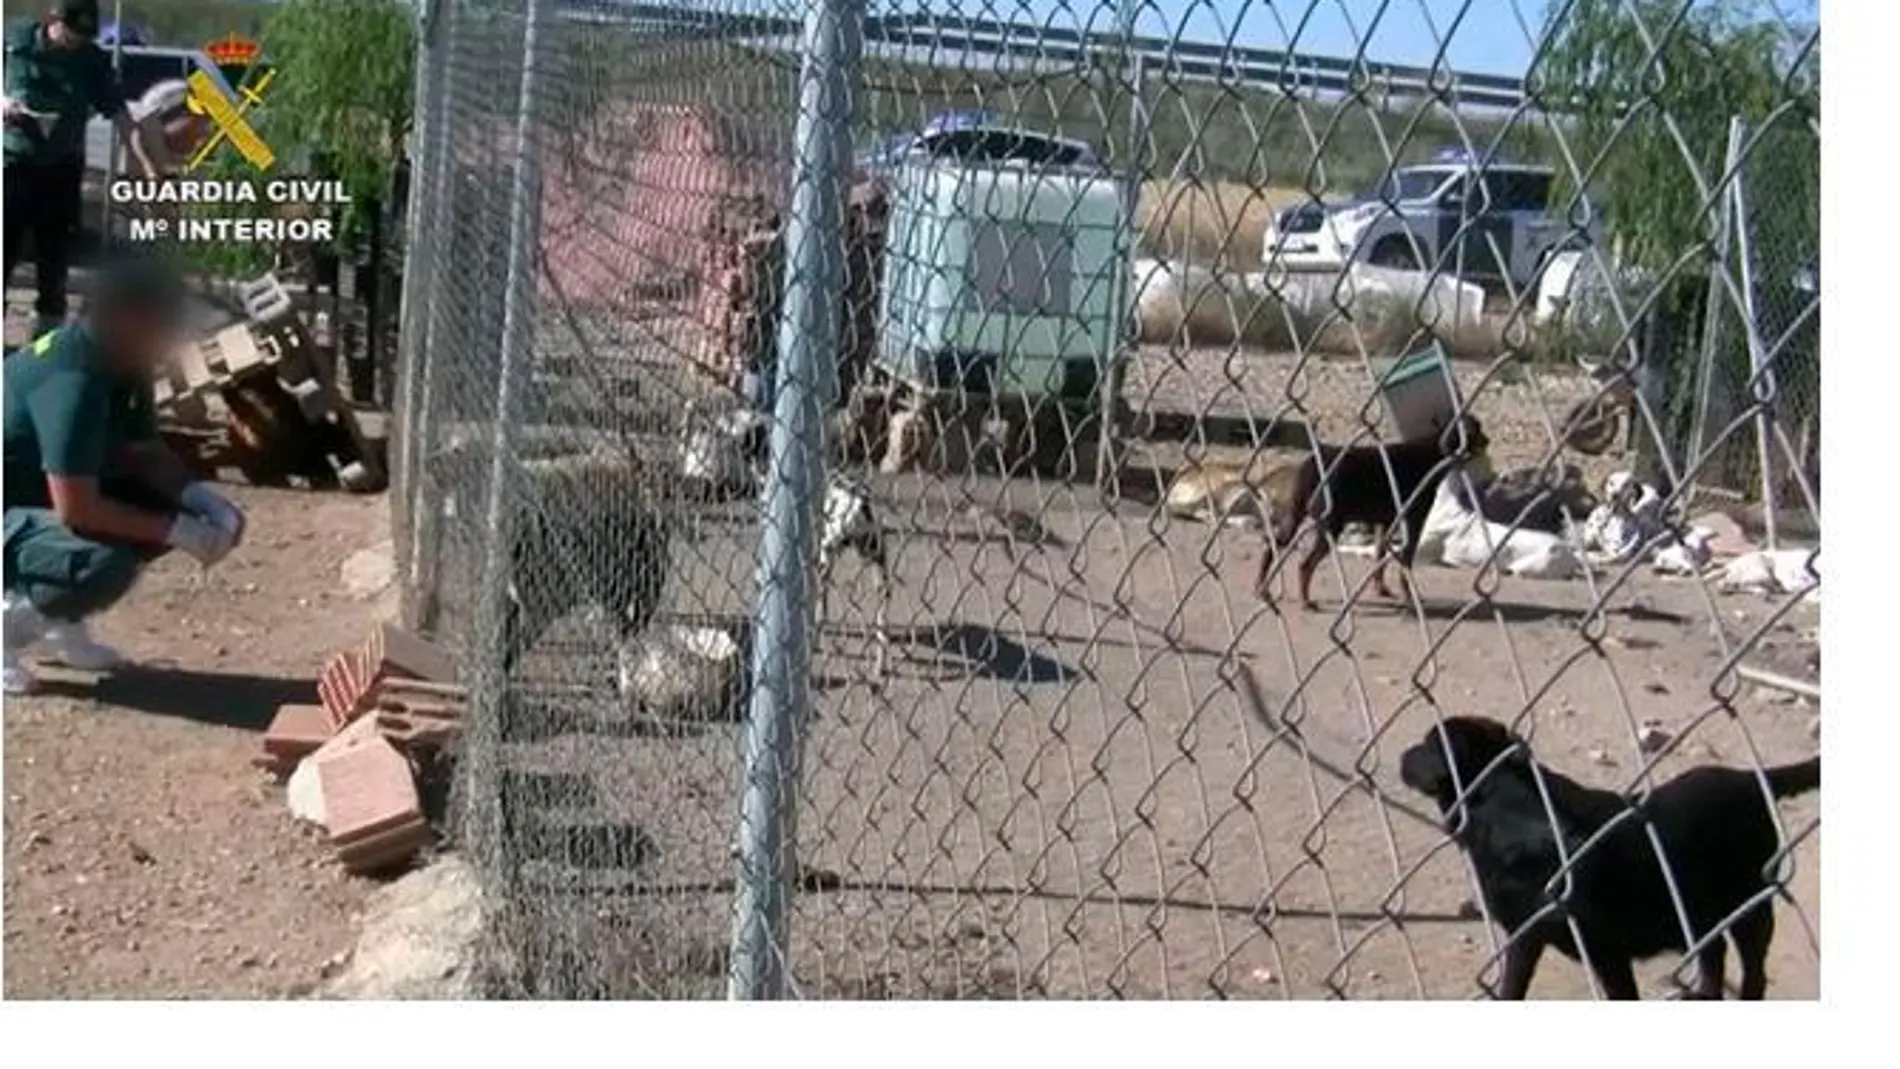 La Guardia Civil detiene al dueño de un criadero por el mal estado de los perros